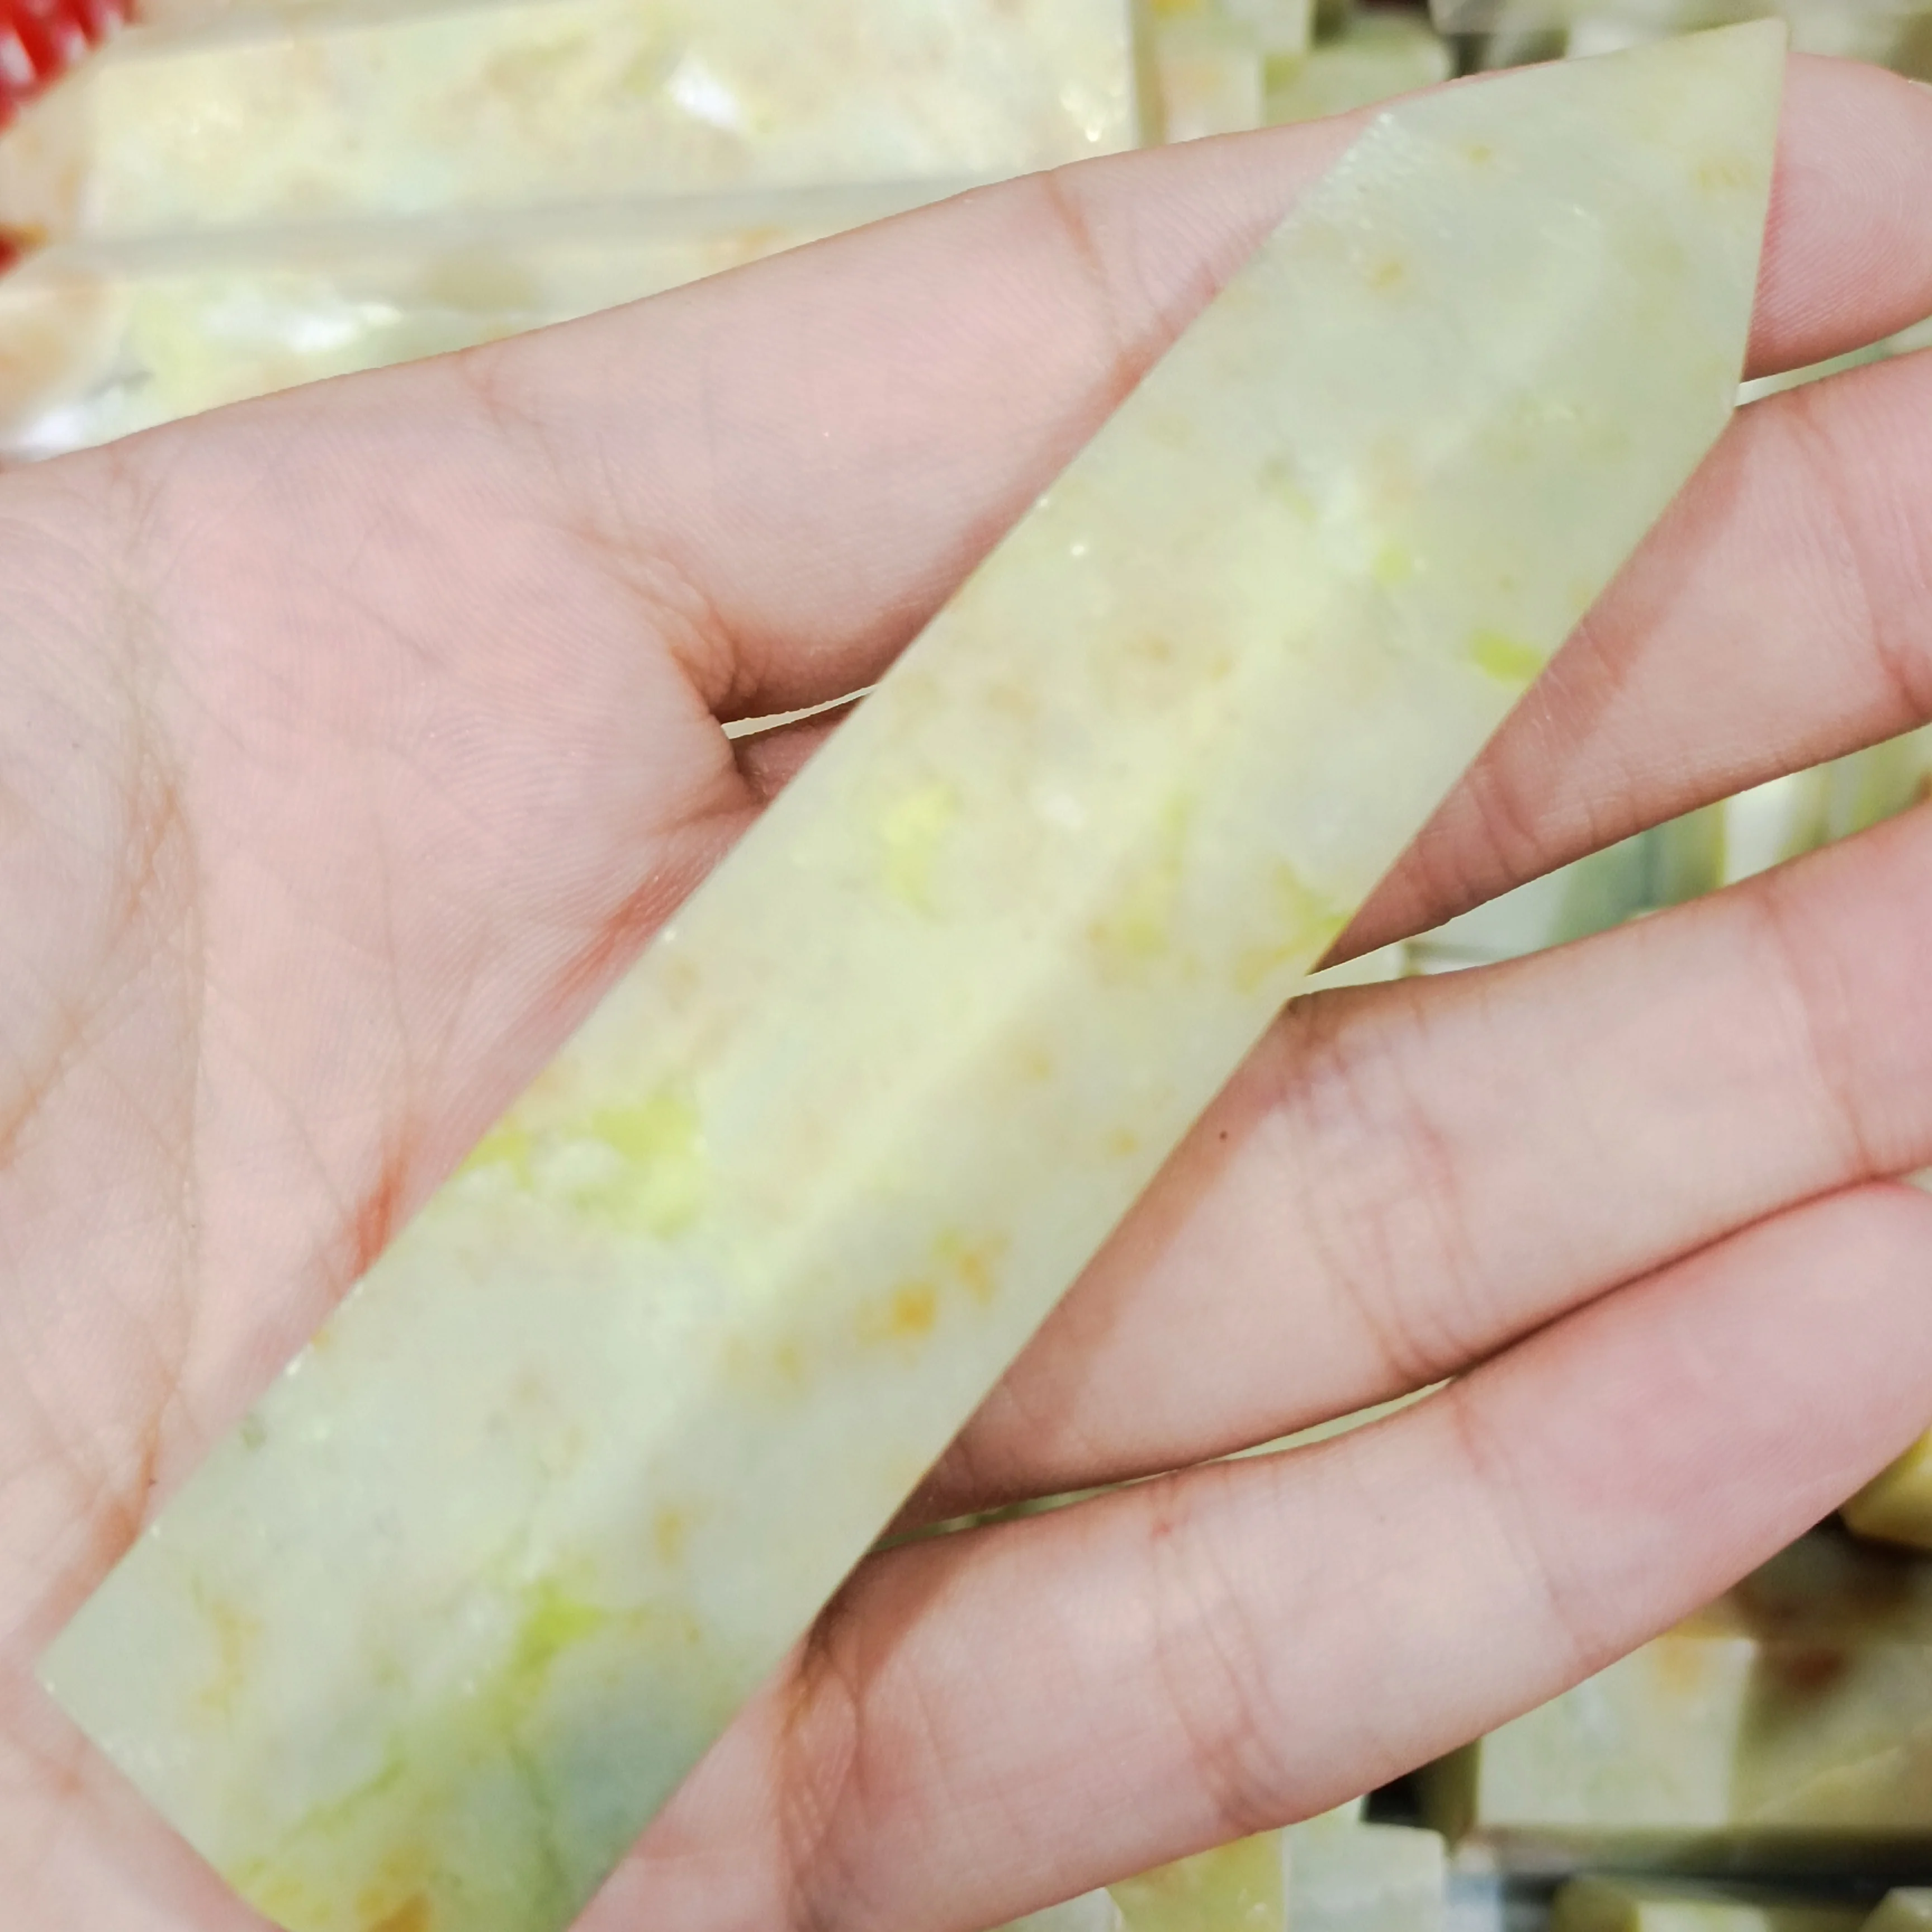 

6-8 см натуральный зеленый нефритовый кристалл, драгоценный камень, искусственный камень, кварцевый кристалл, украшение в виде палочки